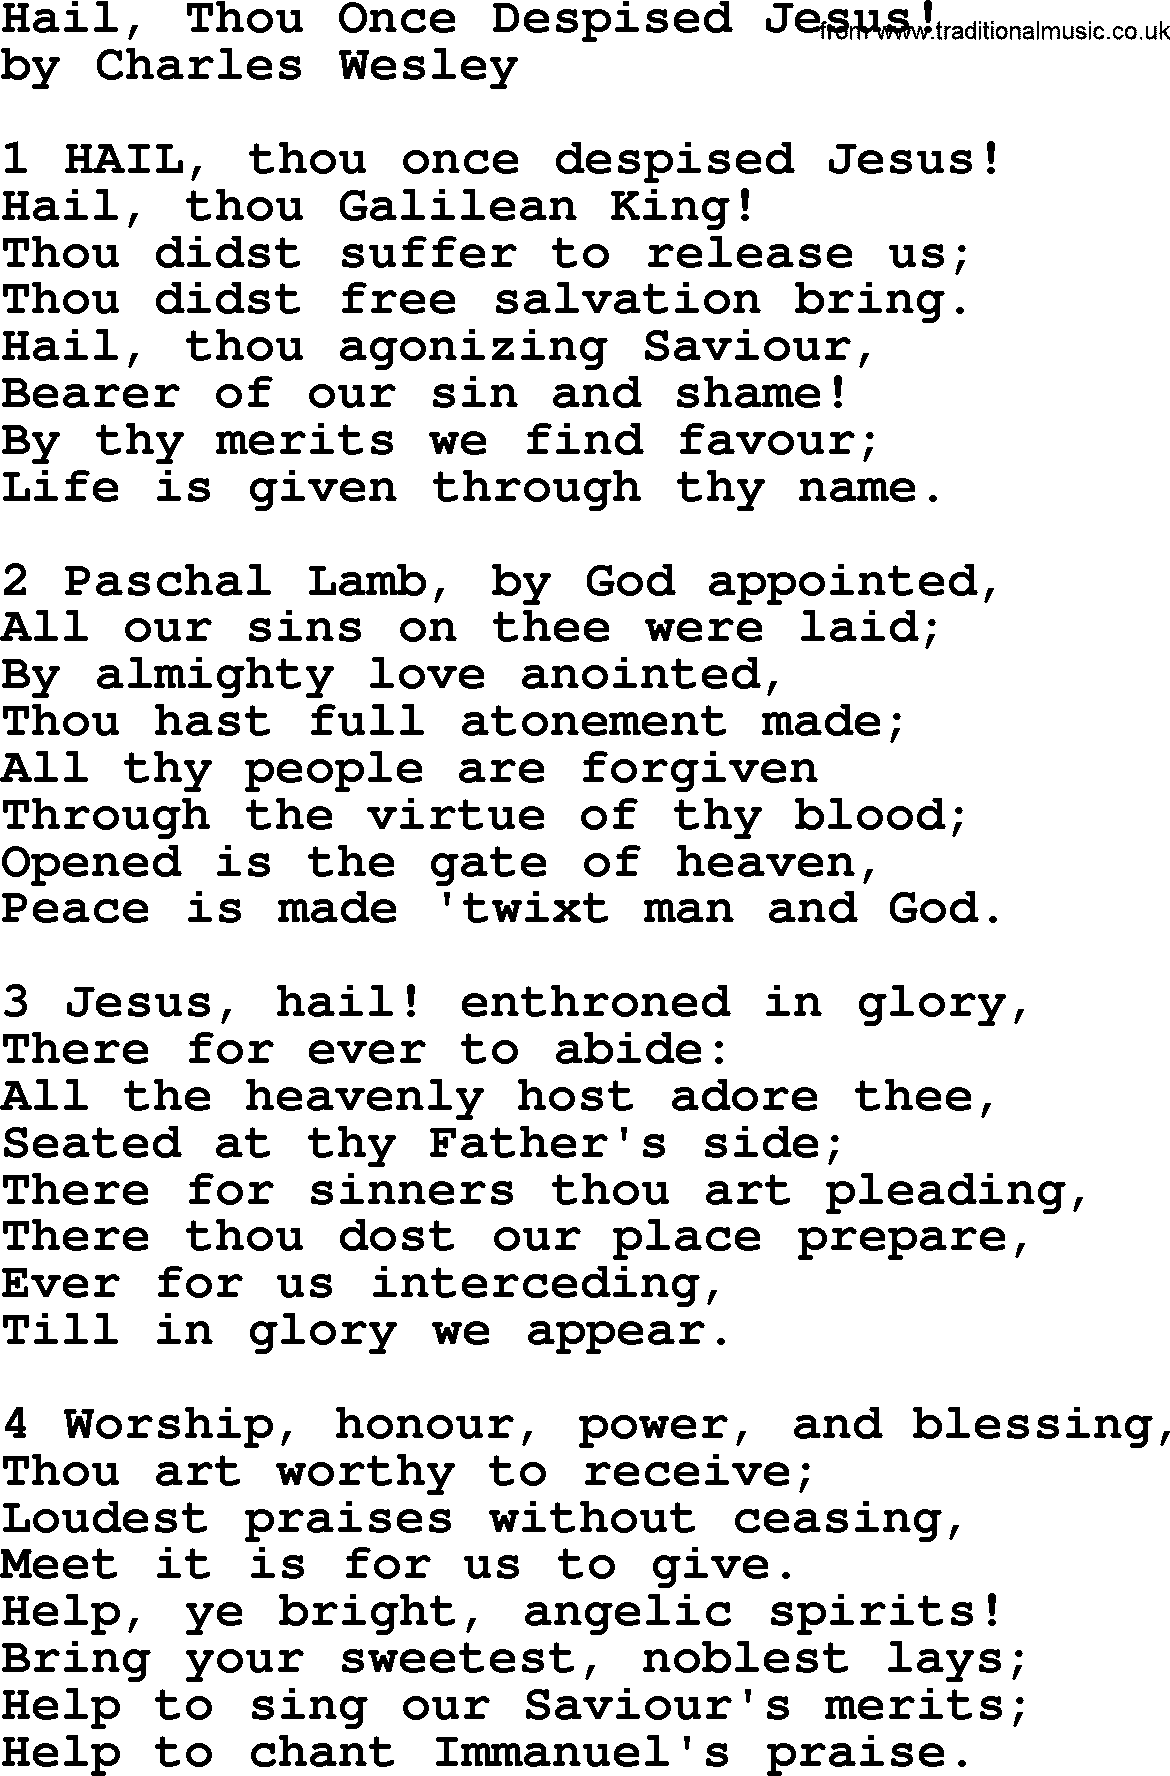 Charles Wesley hymn: Hail, Thou Once Despised Jesus!, lyrics